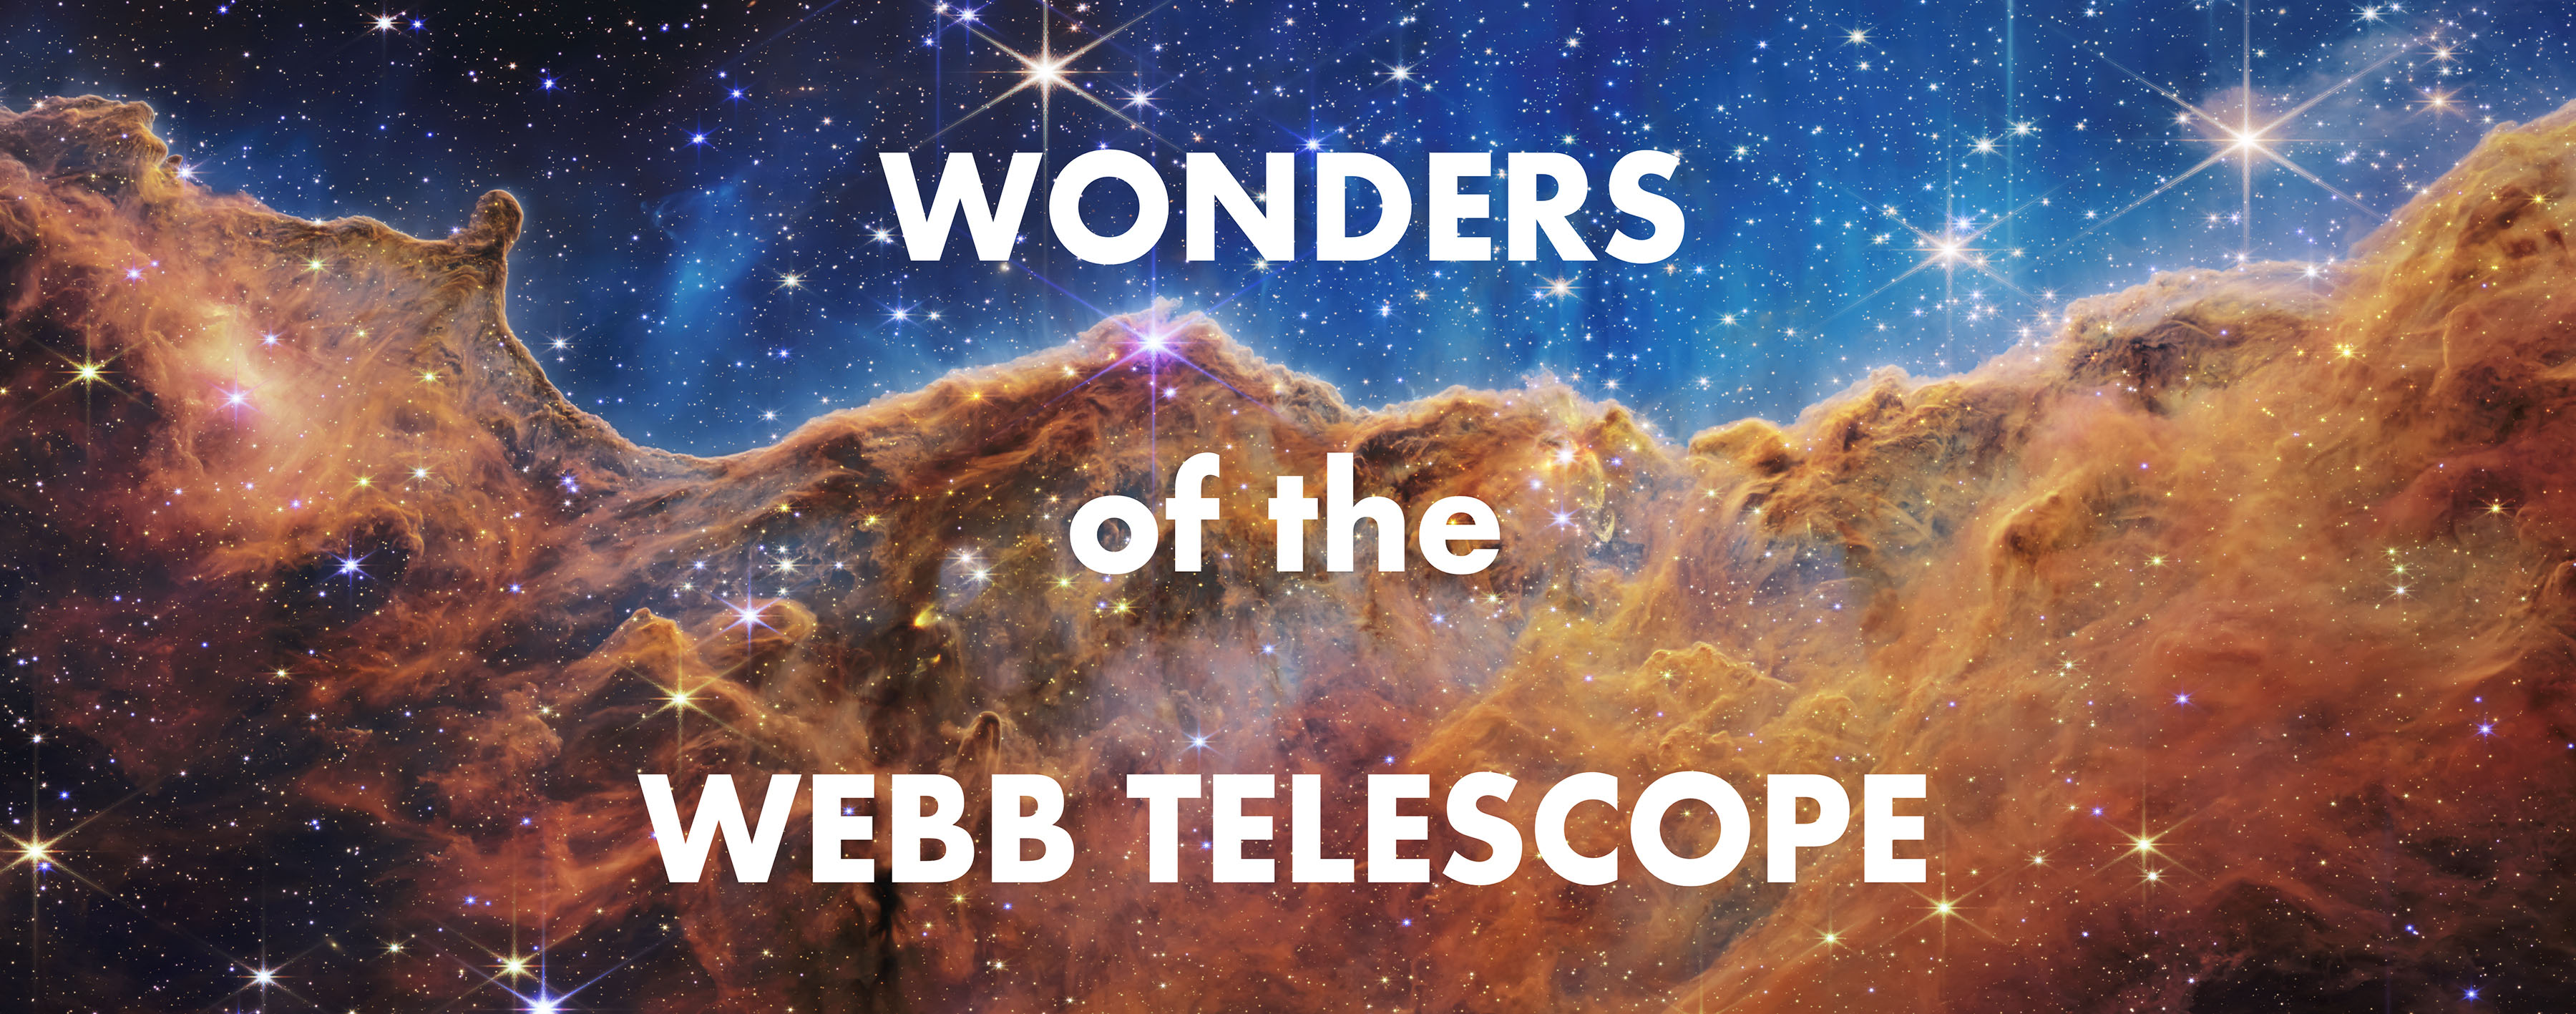 Webb Telescope exhibit